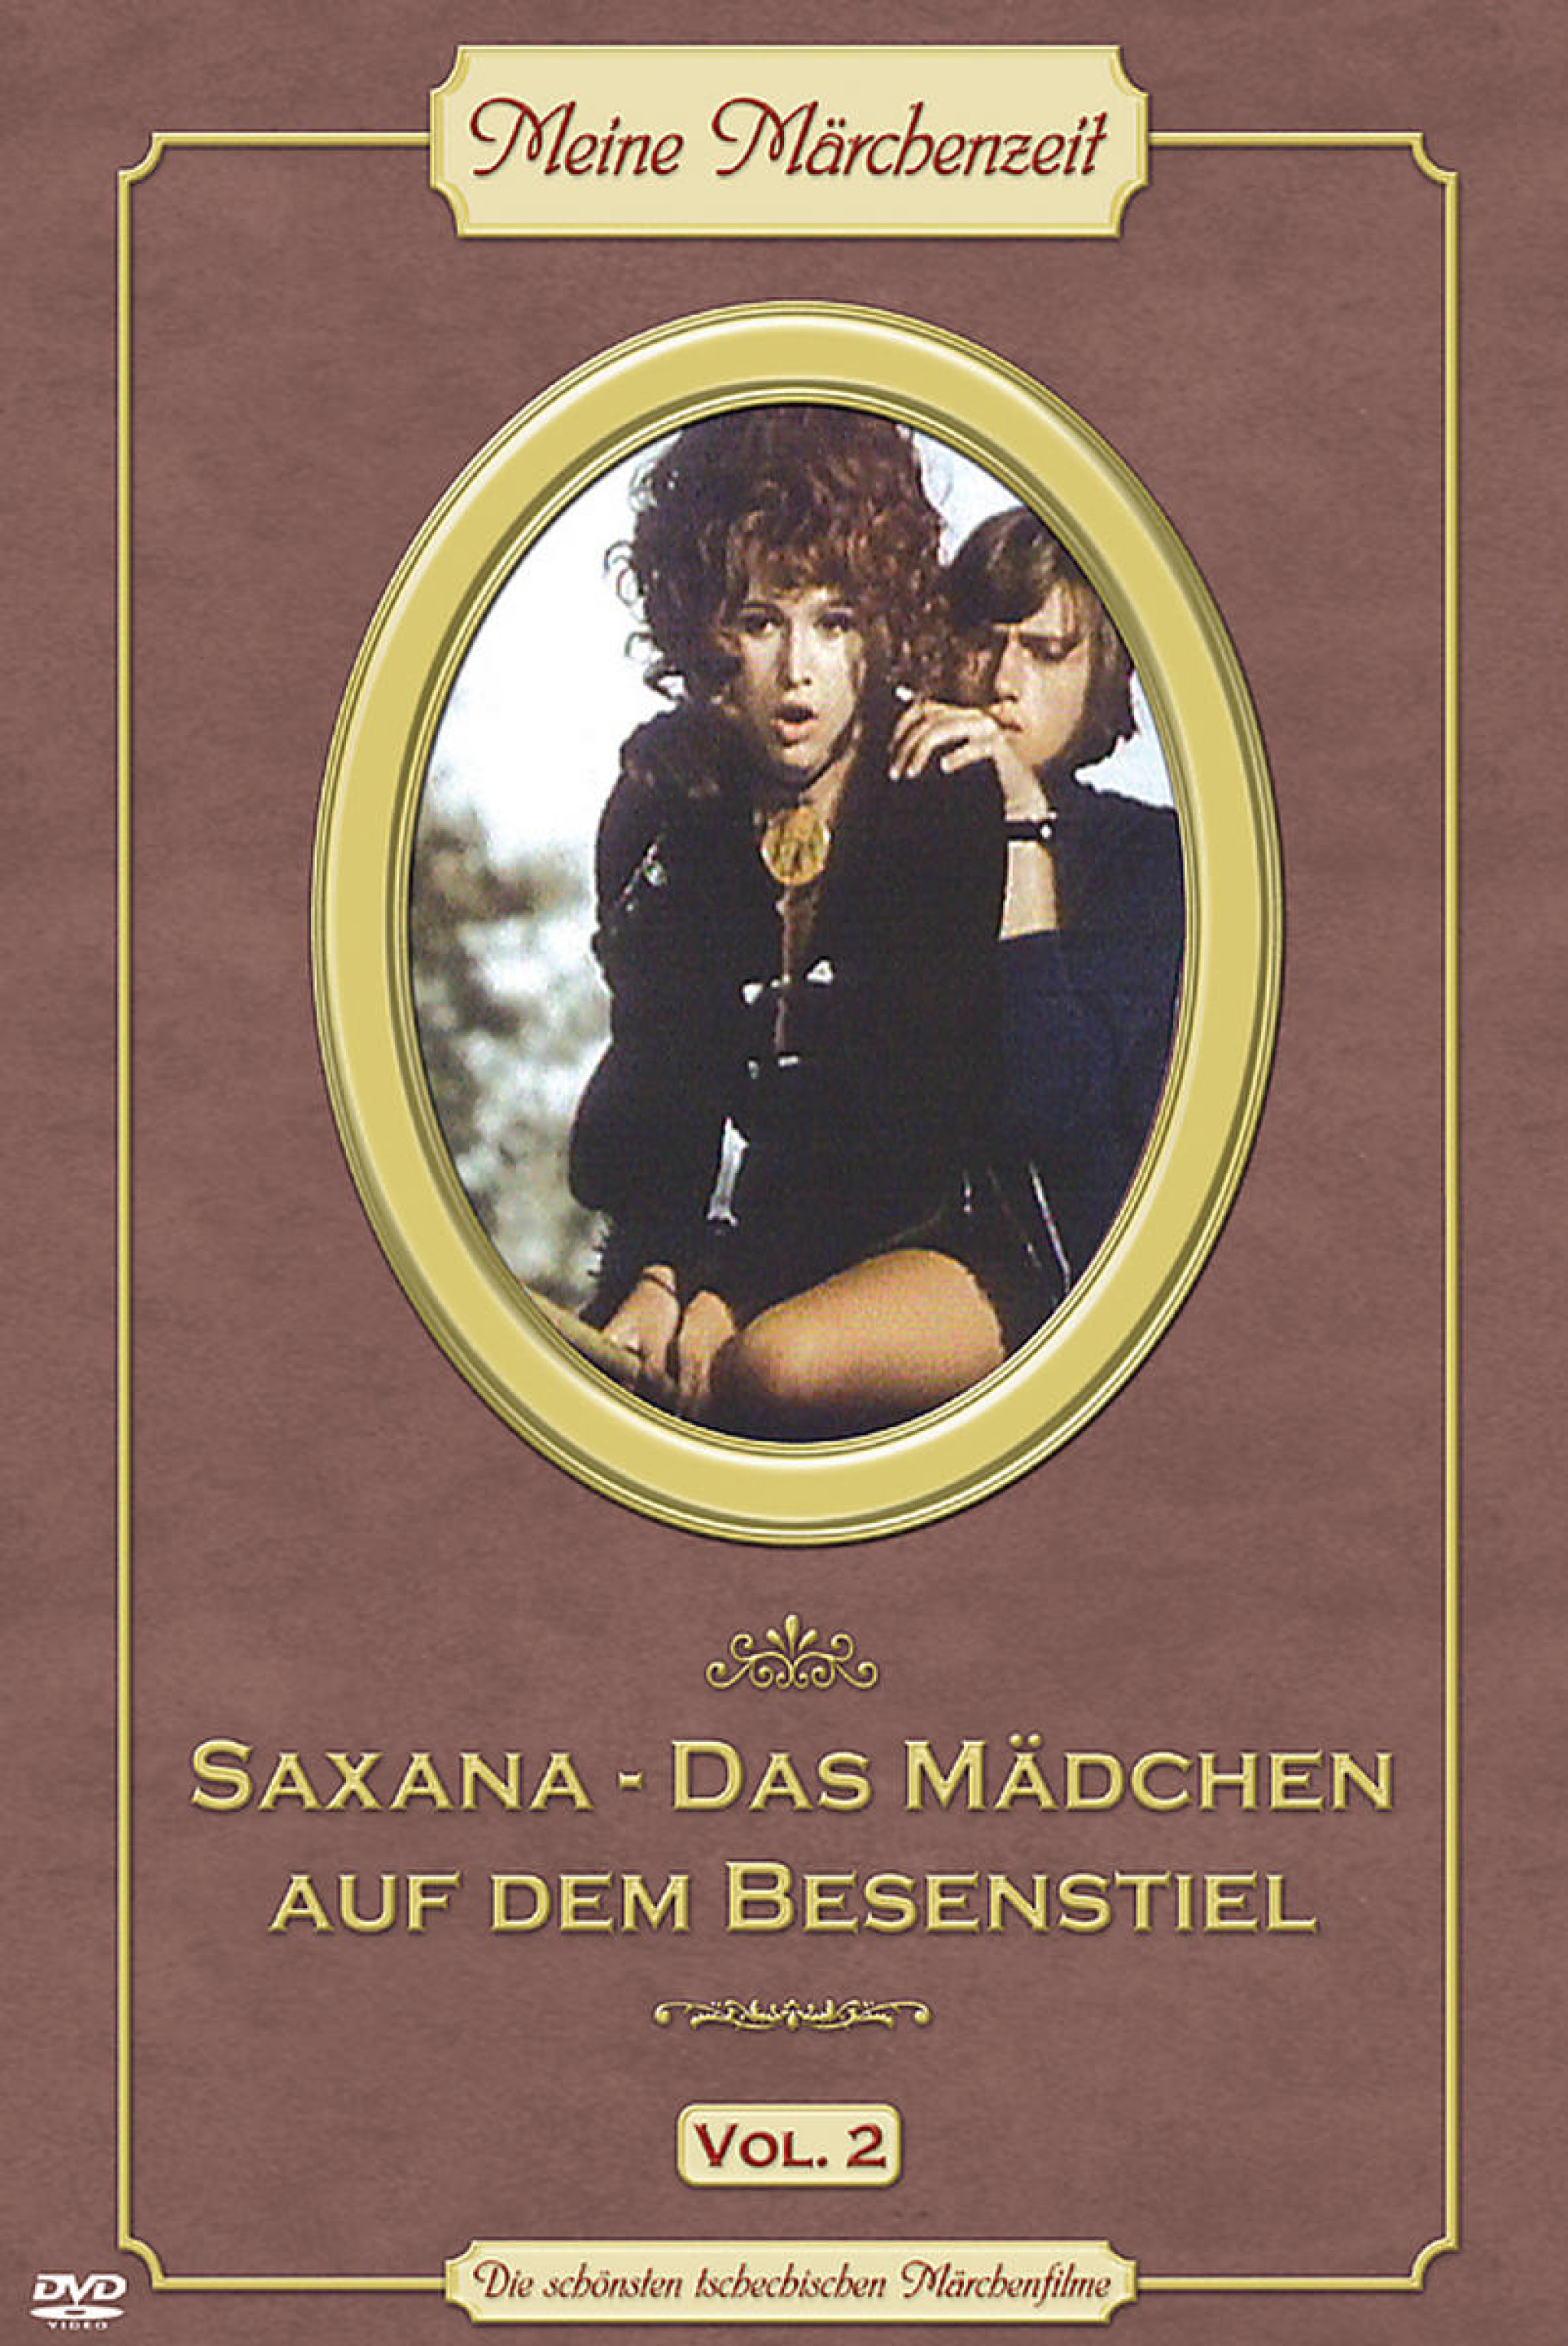 Saxana - Das Mädchen auf dem Besenstiel - Meine Märchenwelt (Vol. 2) 0602498186370